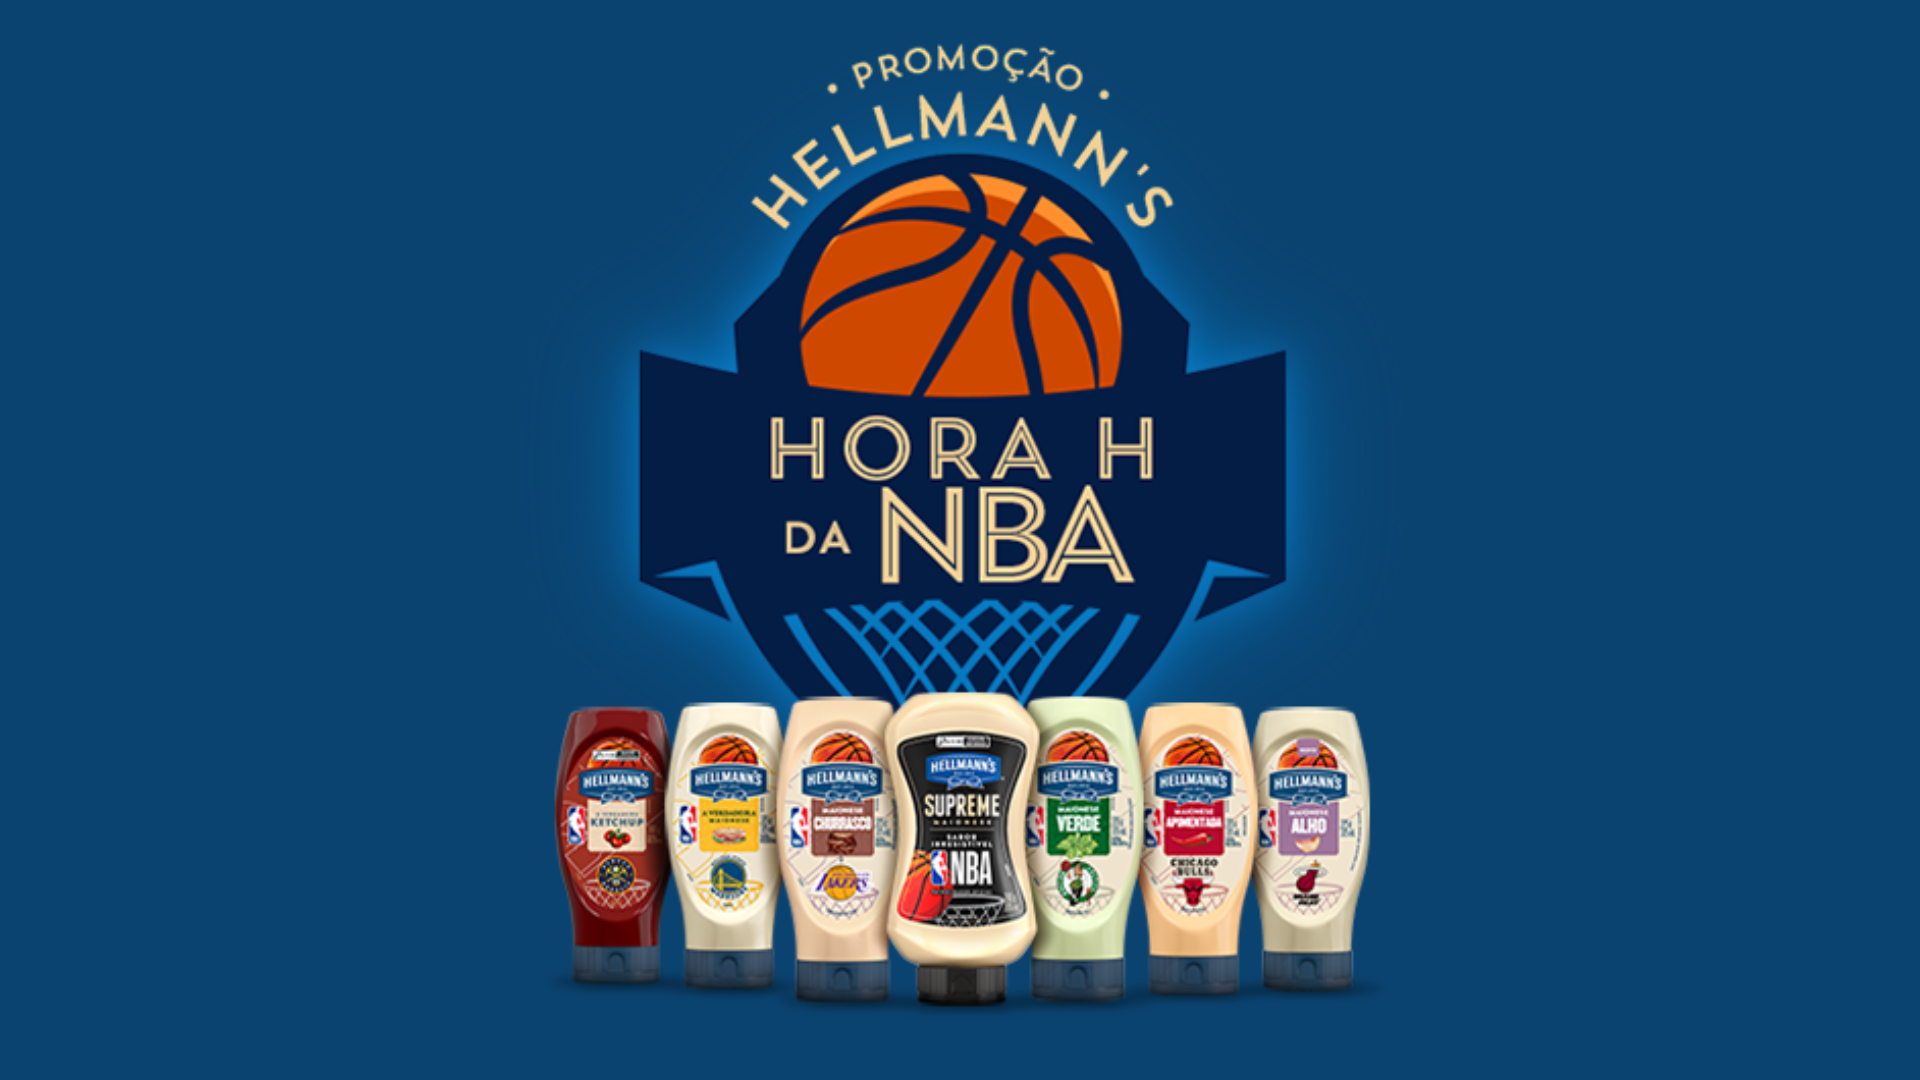 Hellmann’s distribui prêmios para os fãs de basquete em nova campanha,'Hora H da NBA'